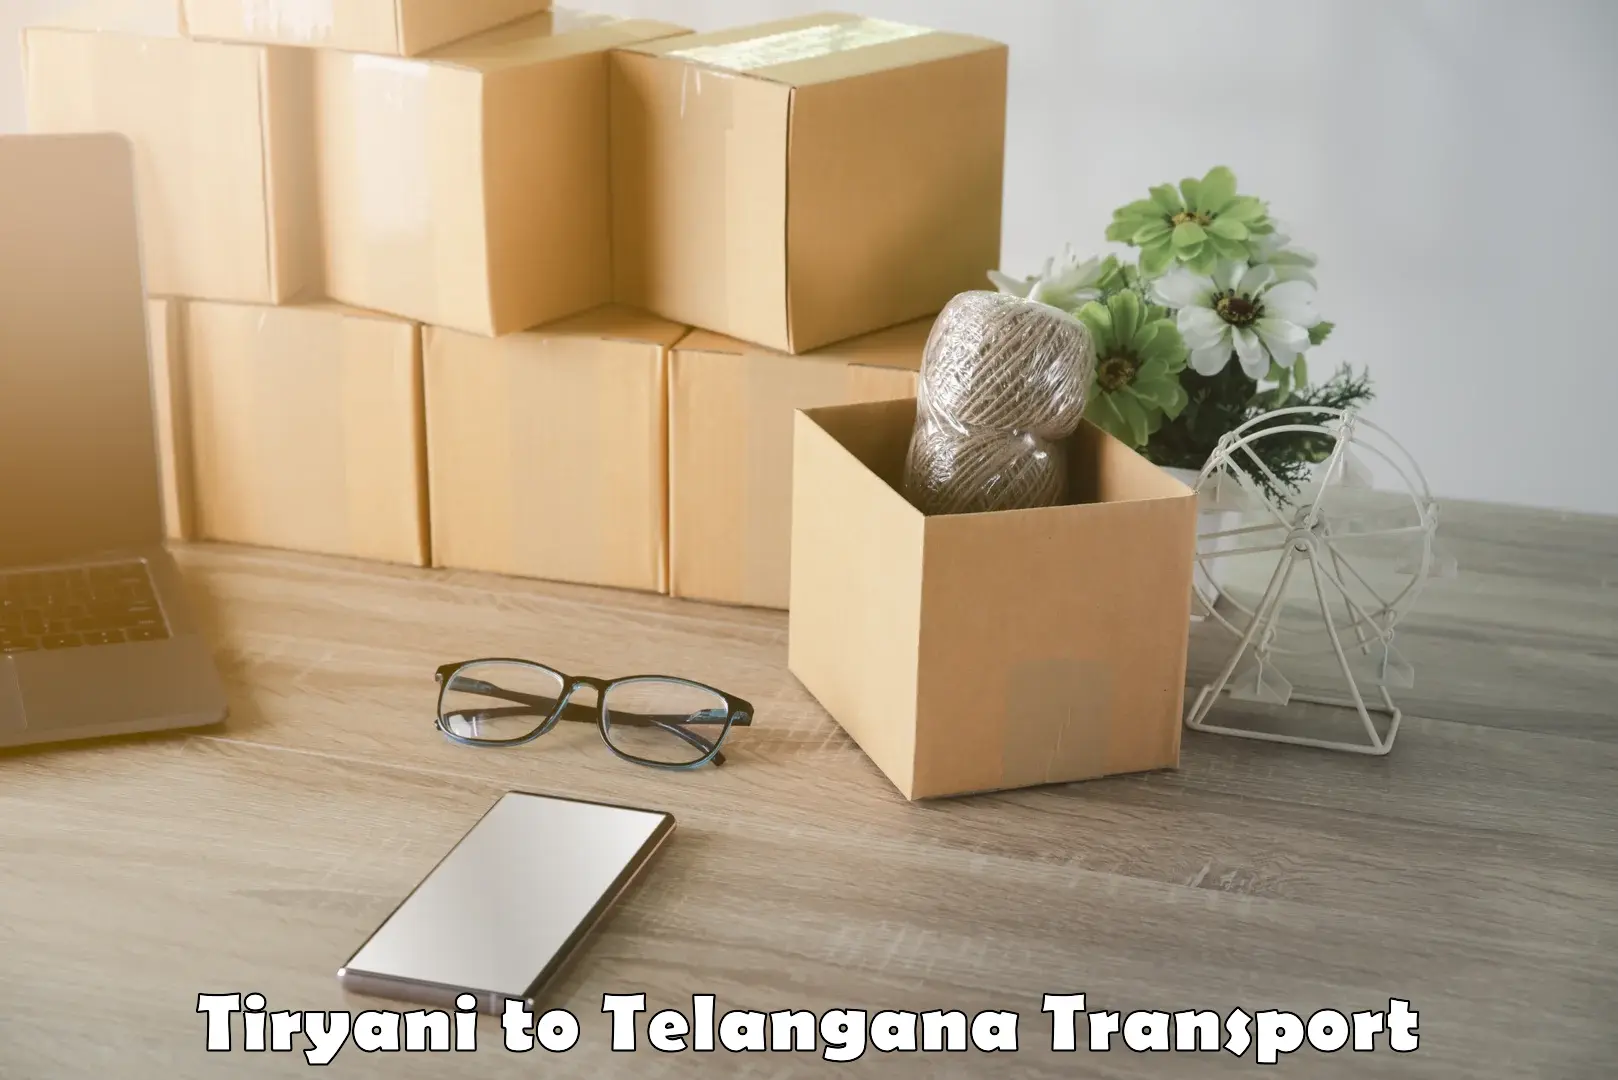 Online transport booking Tiryani to Adilabad